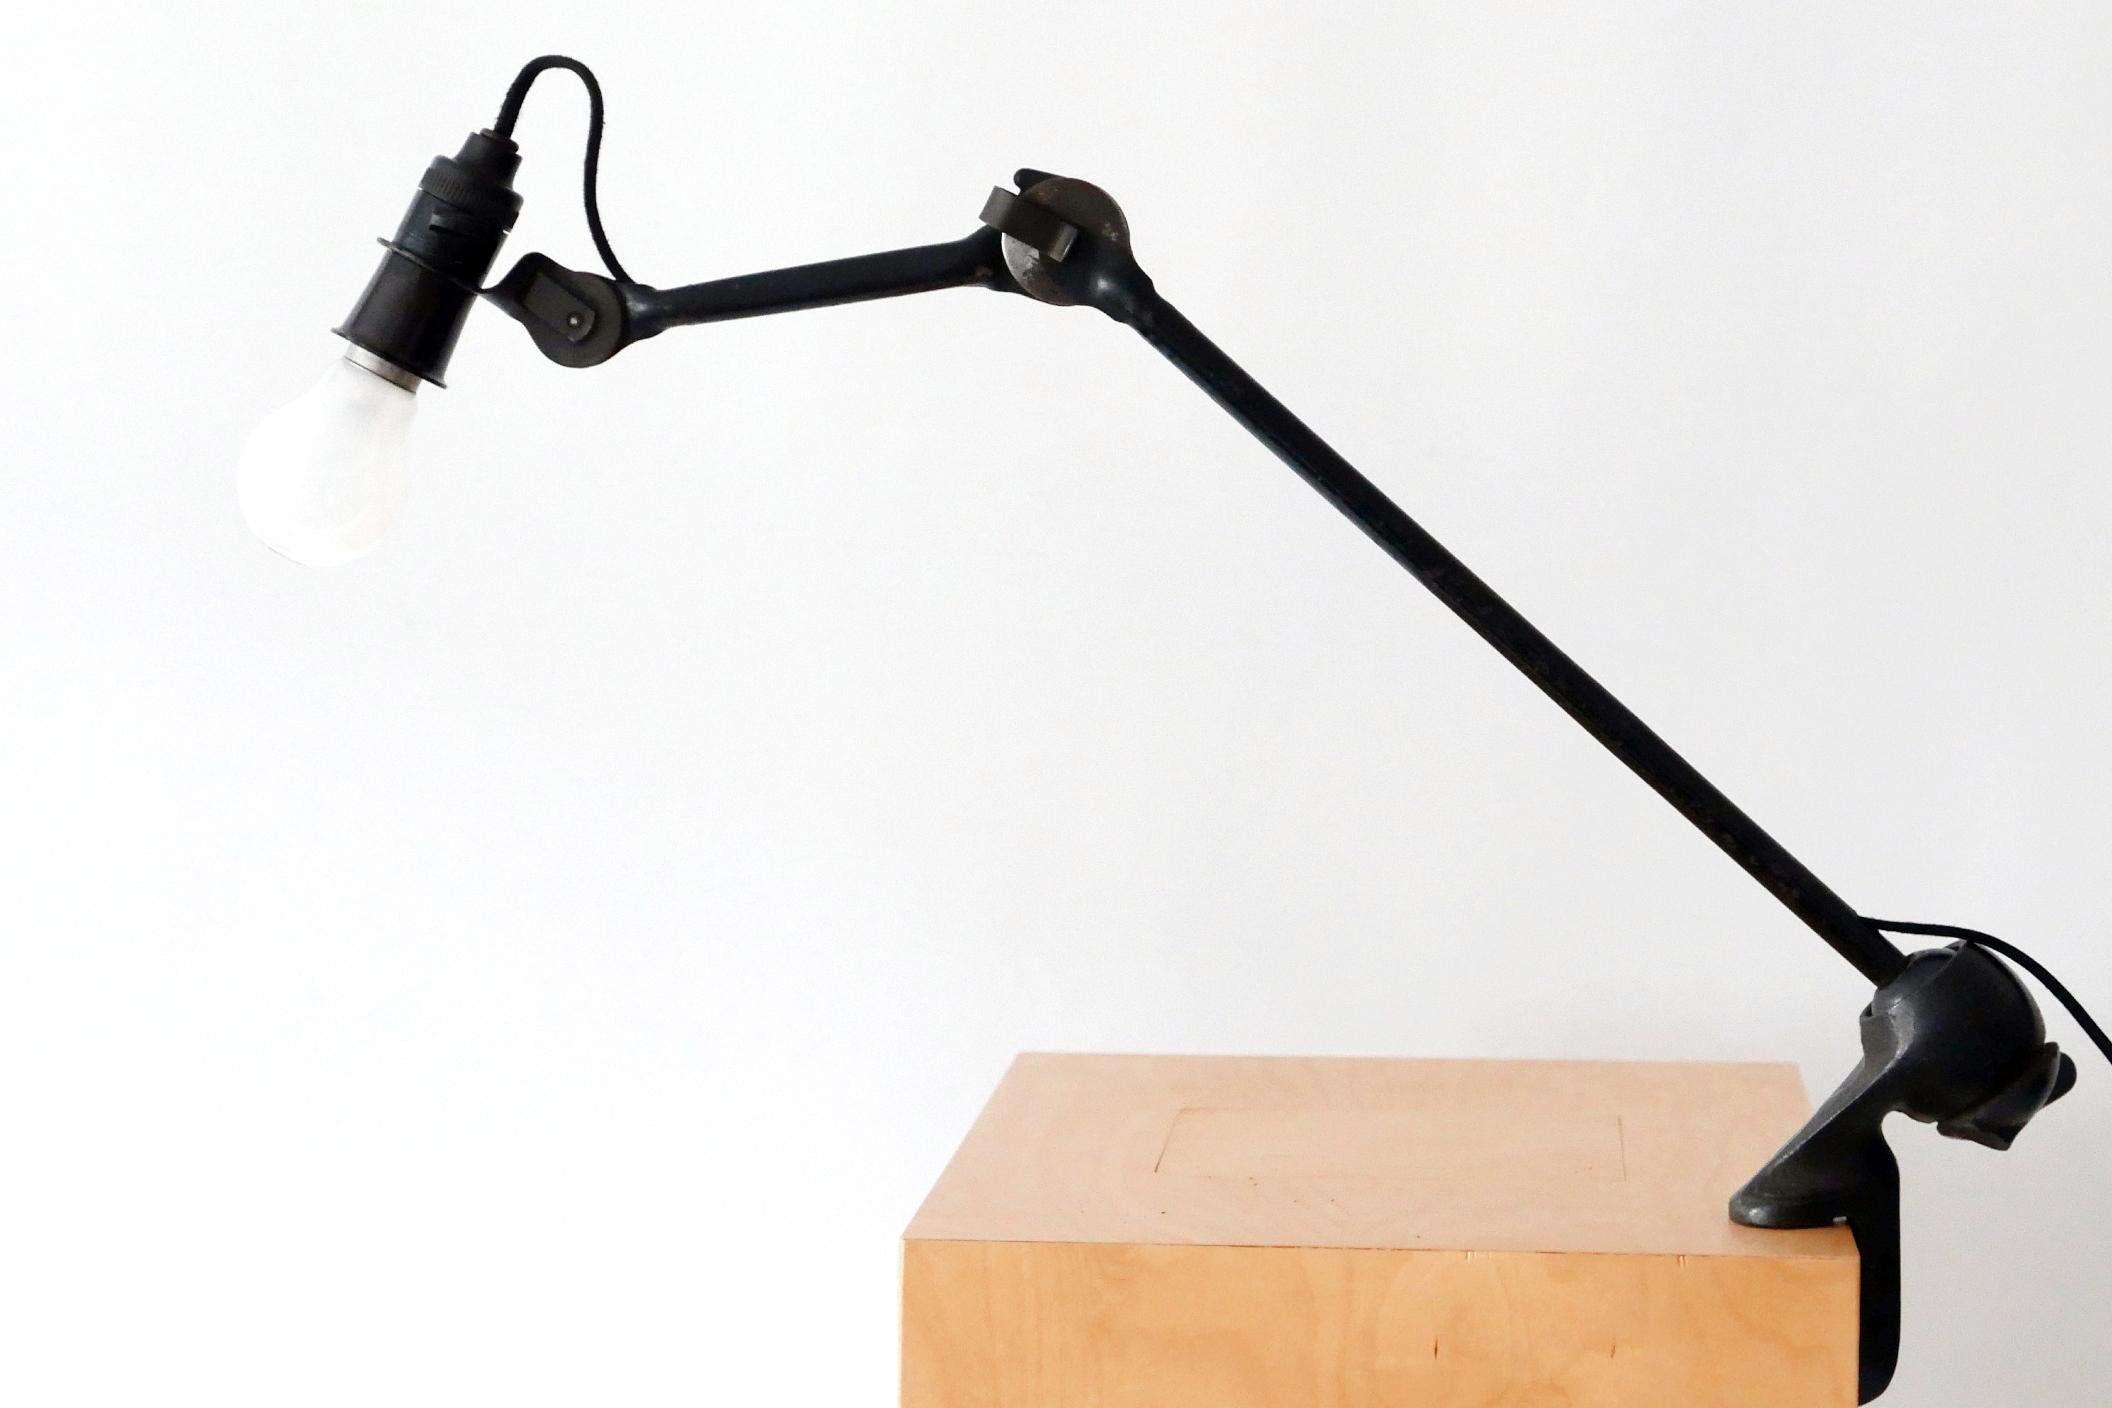 Modernist Task Light or Clamp Table Lamp by Bernard-Albin Gras for Gras, 1920s For Sale 4